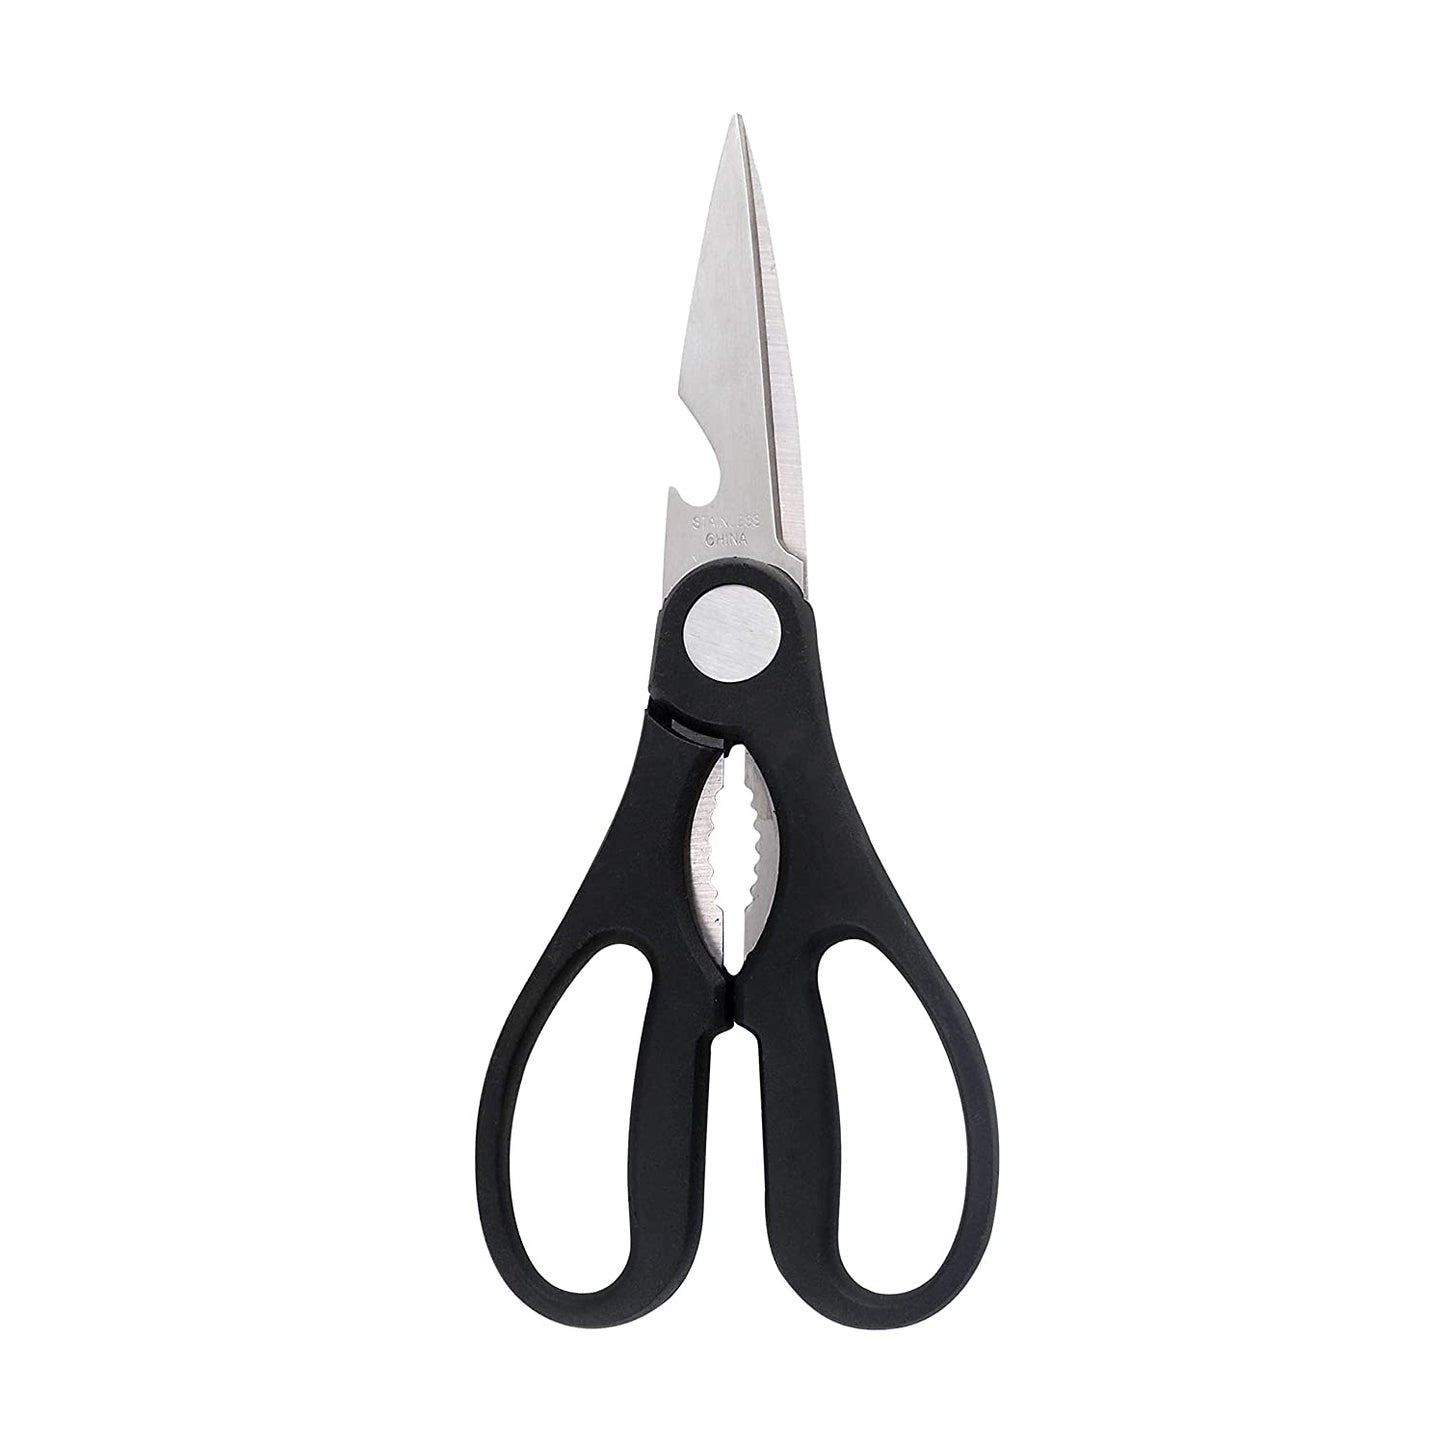 Classy Touch Kitchen Scissors - 3 in 1 Purpose